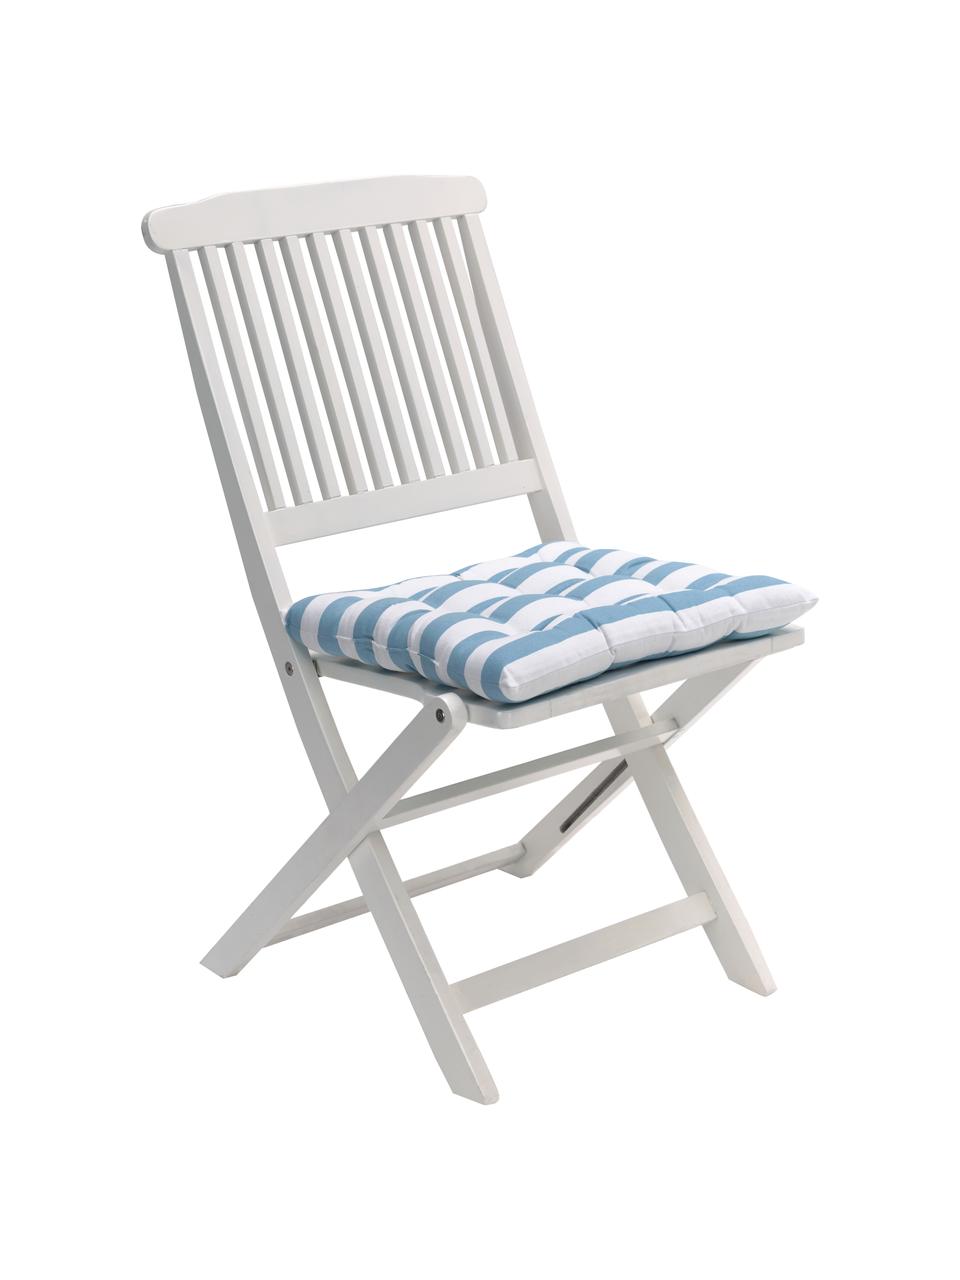 Coussin de chaise 40x40 bleu/blanc Timon, Bleu, blanc, larg. 40 x long. 40 cm